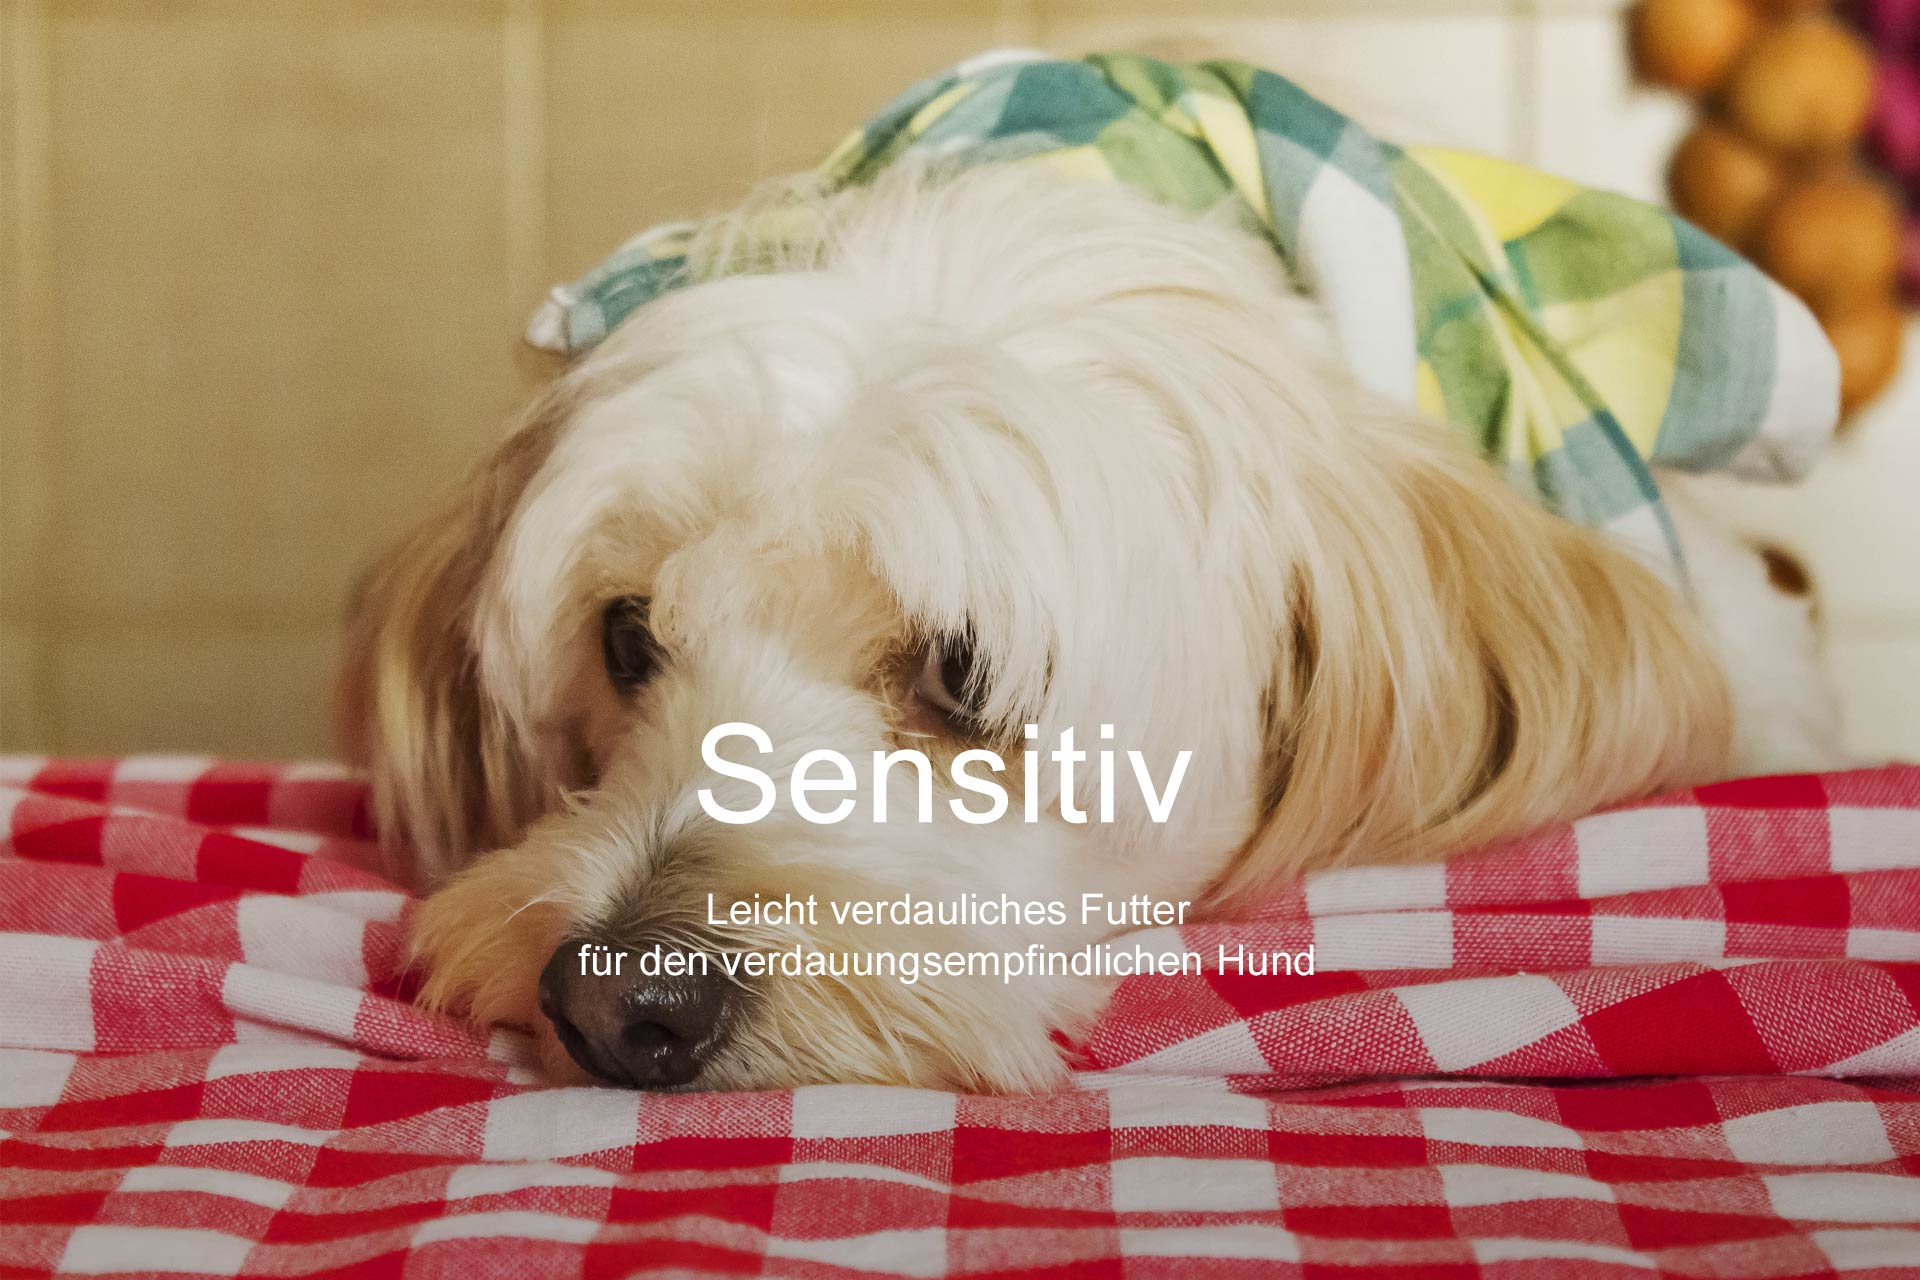 Hundefutter Sensitiv leicht Verdauliches Futter für den verdauungsempfindlichen Hund